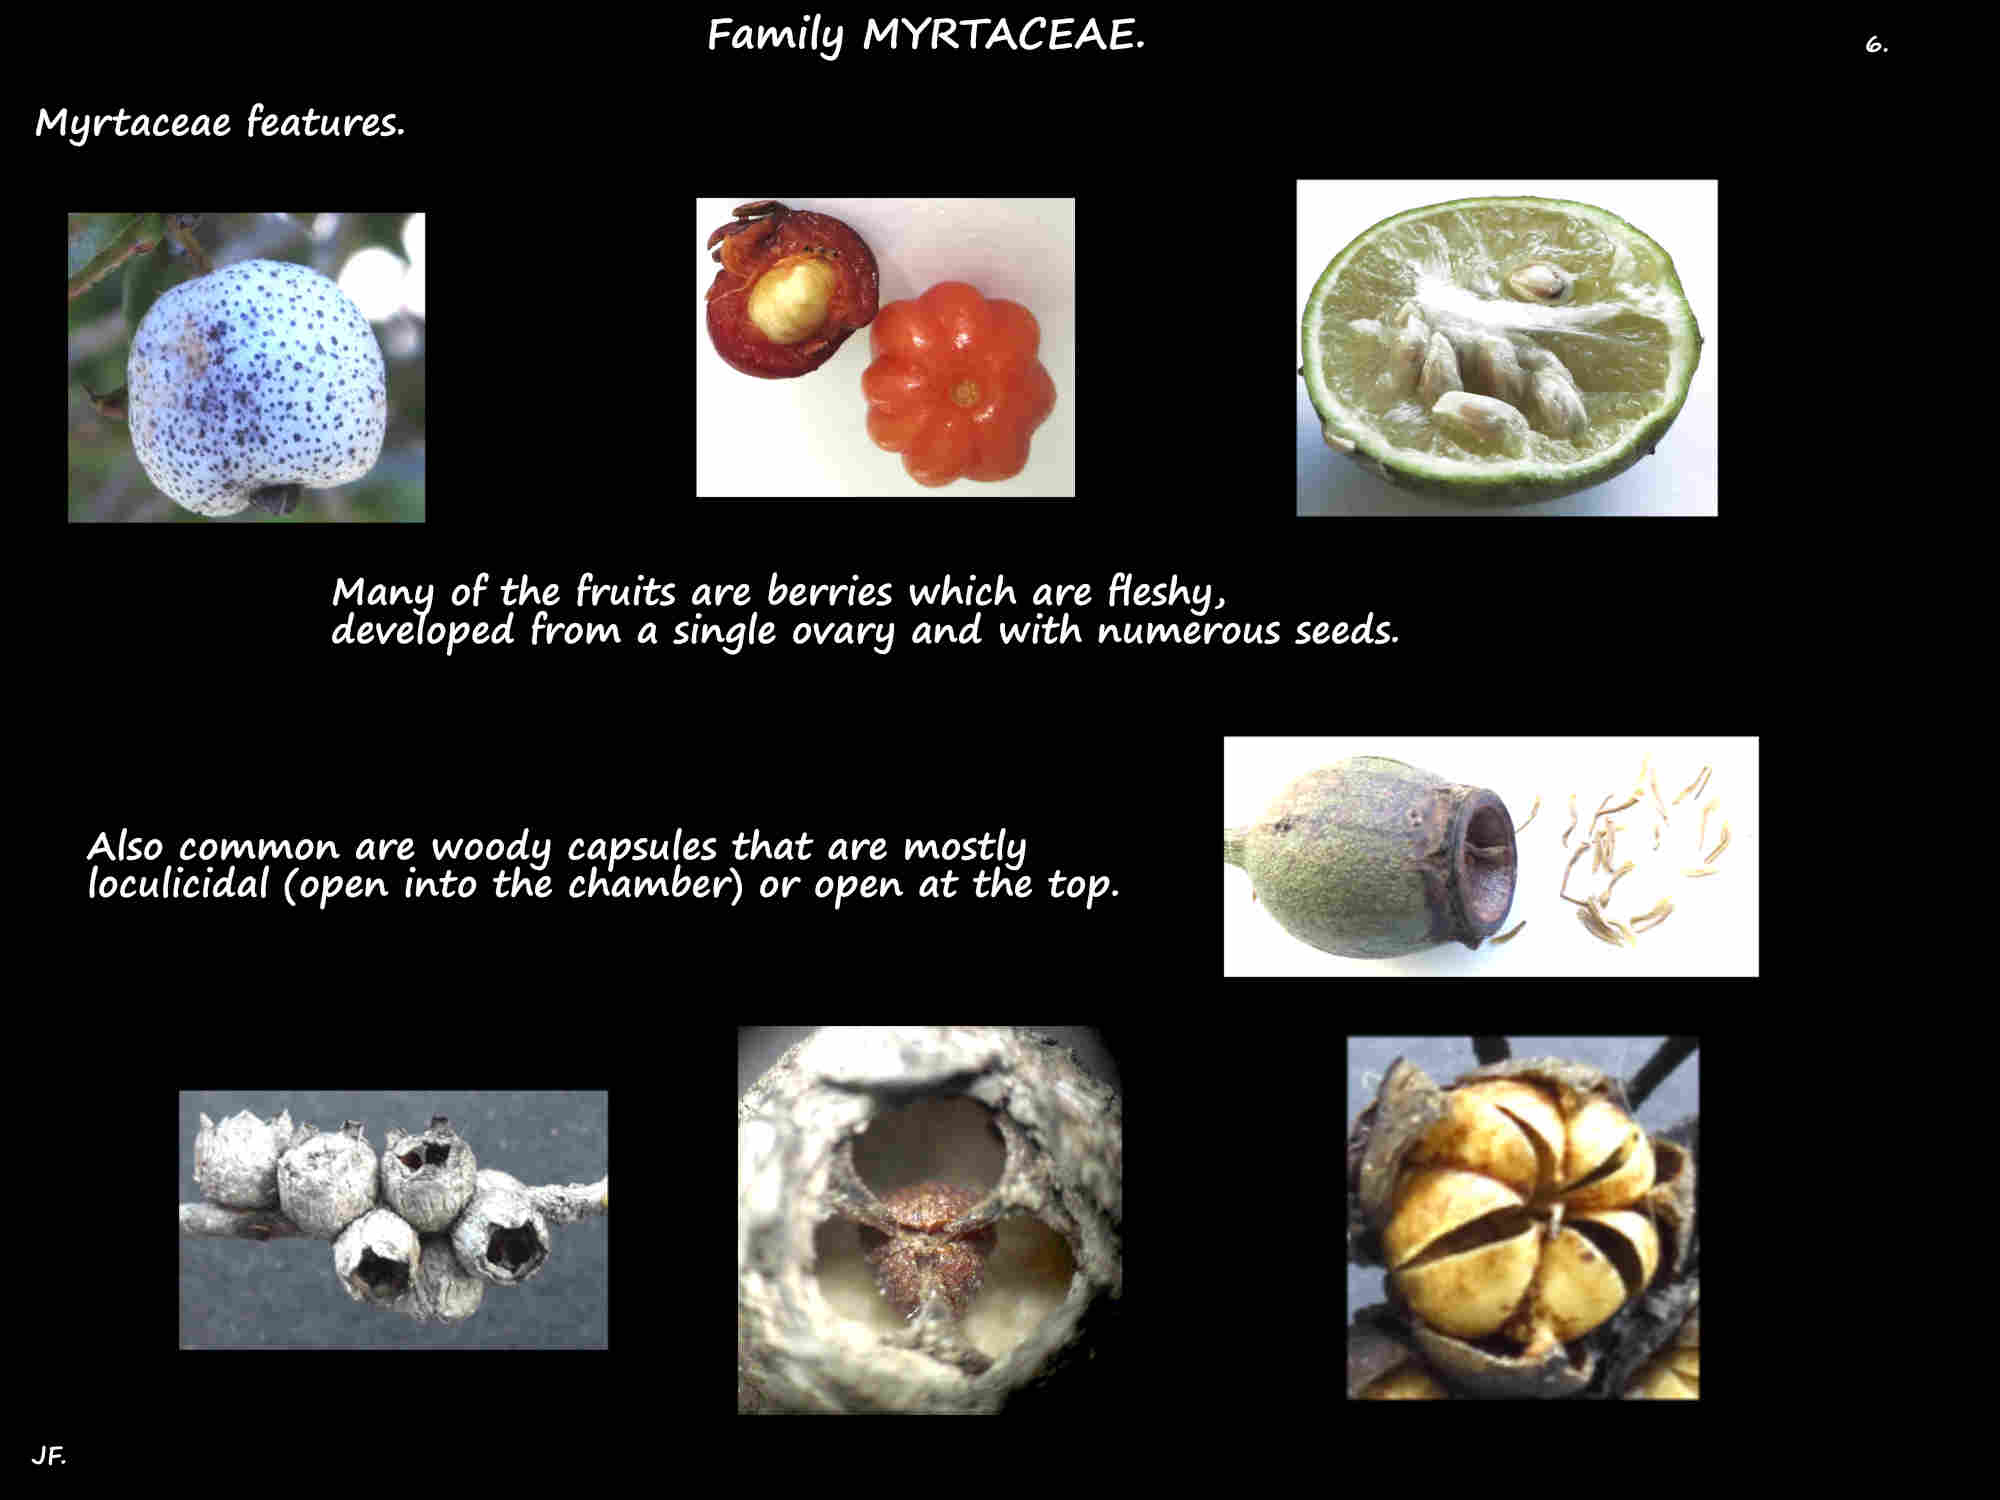 7 Myrtaceae berries & capsules